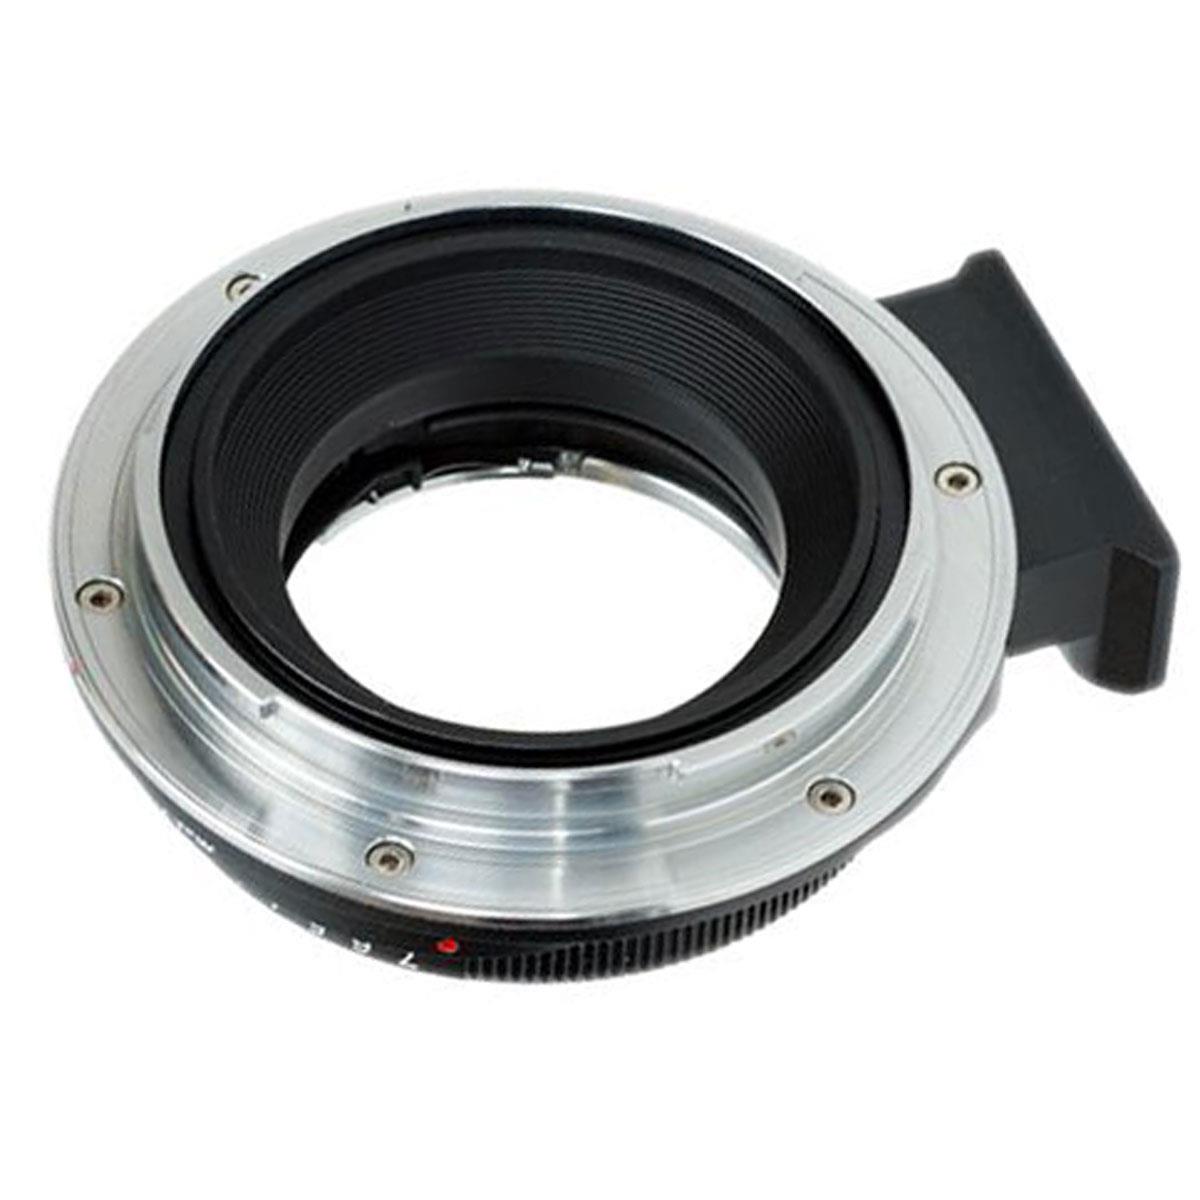 Image of Metabones Nikon G Lens to Fuji G-Mount GFX Adapter